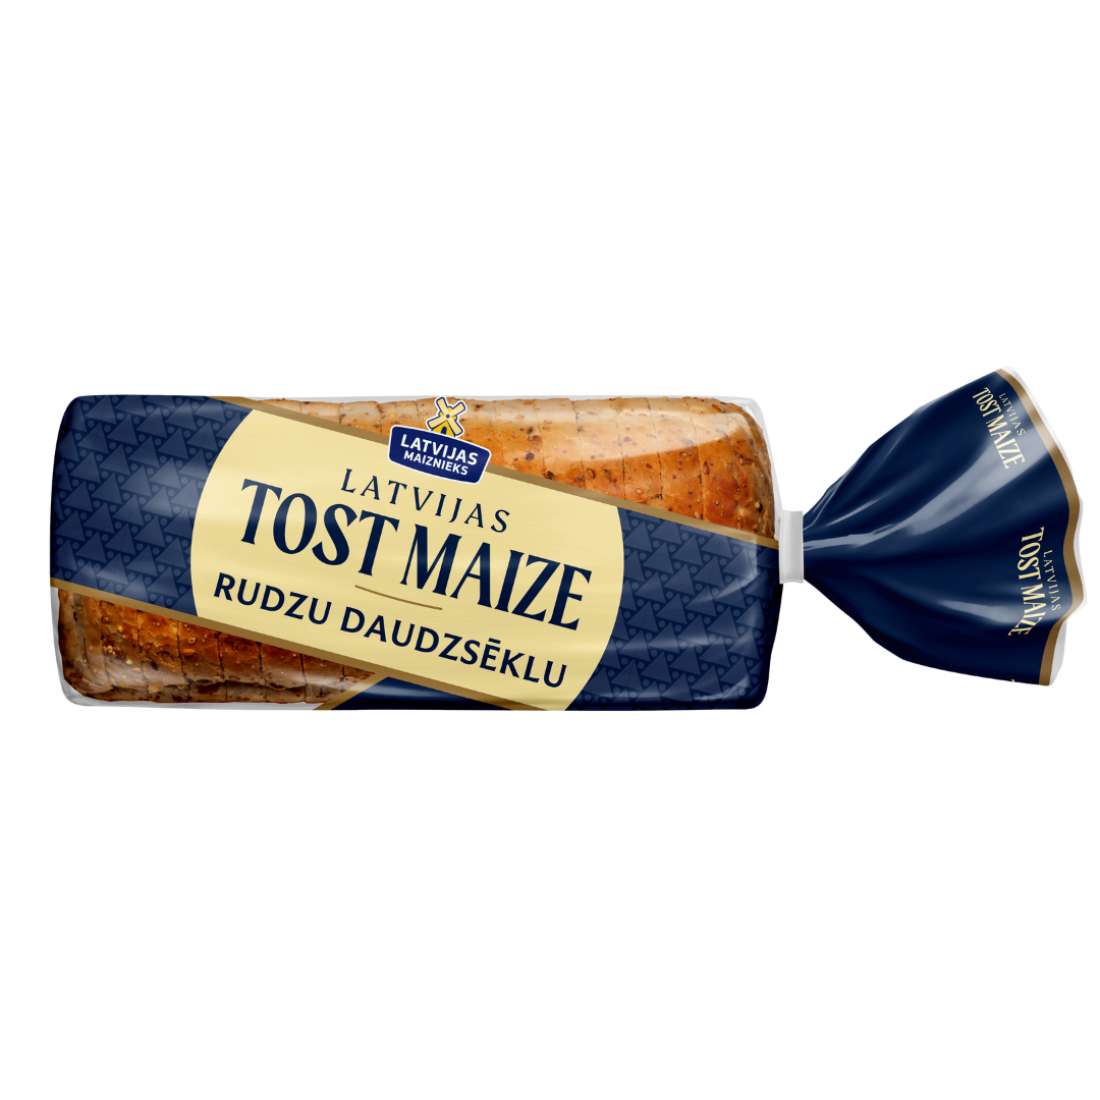 Latvijas Tost Maize Rudzu daudzsēklu tostermaize, 450g